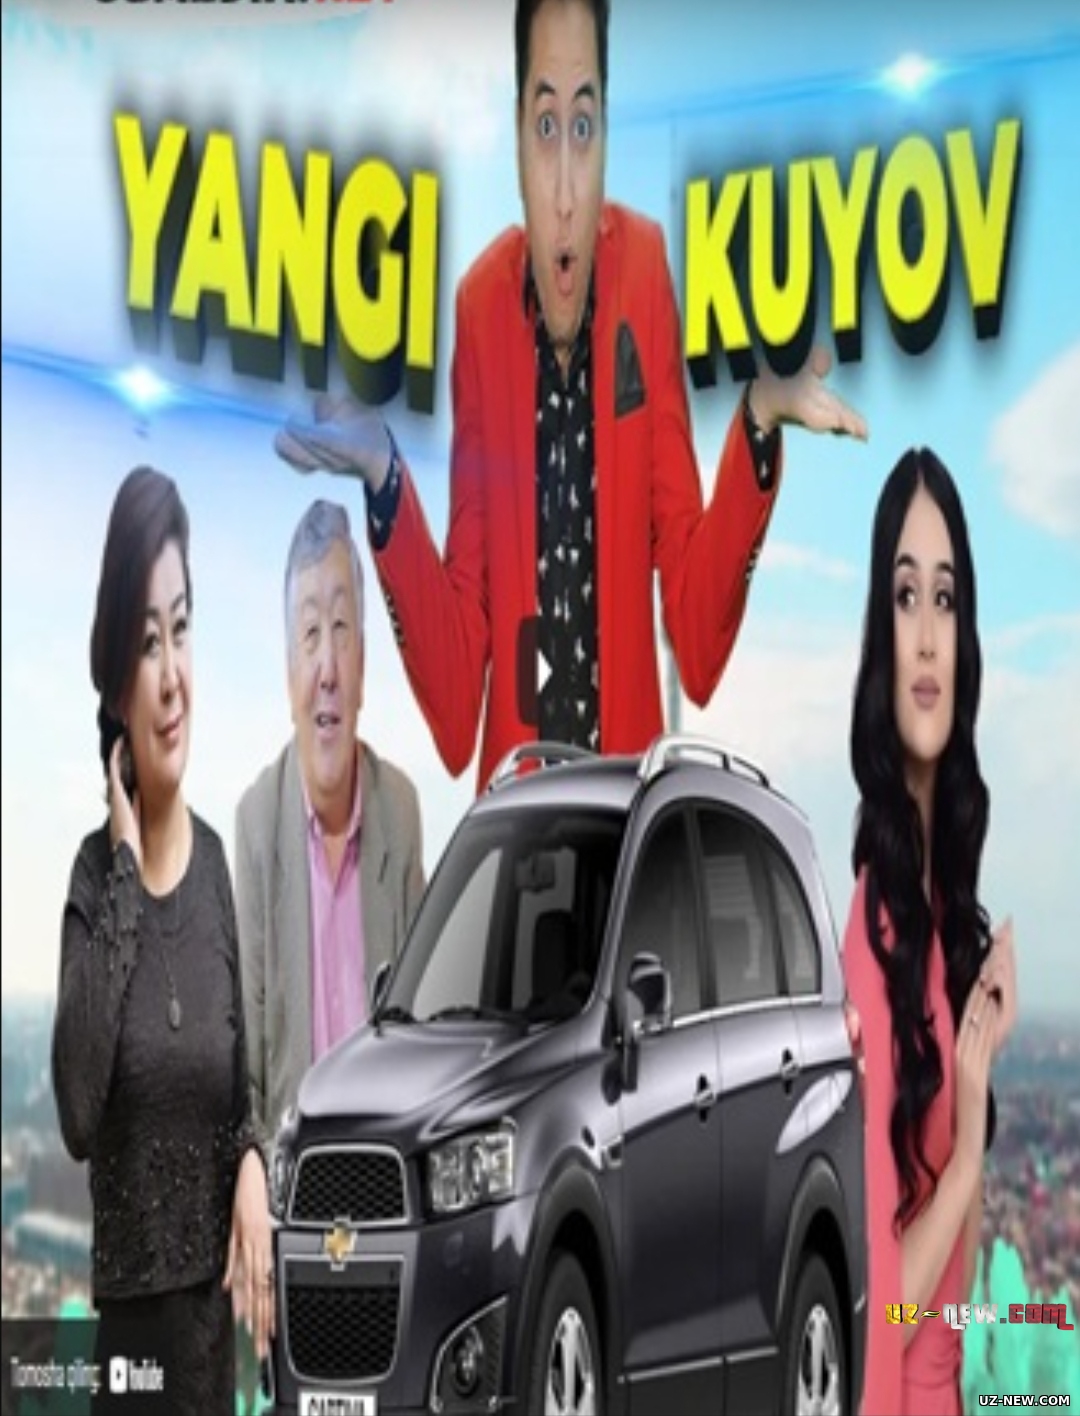 Yangi kuyov (o'zbek film) | Янги куёв (узбекфильм)